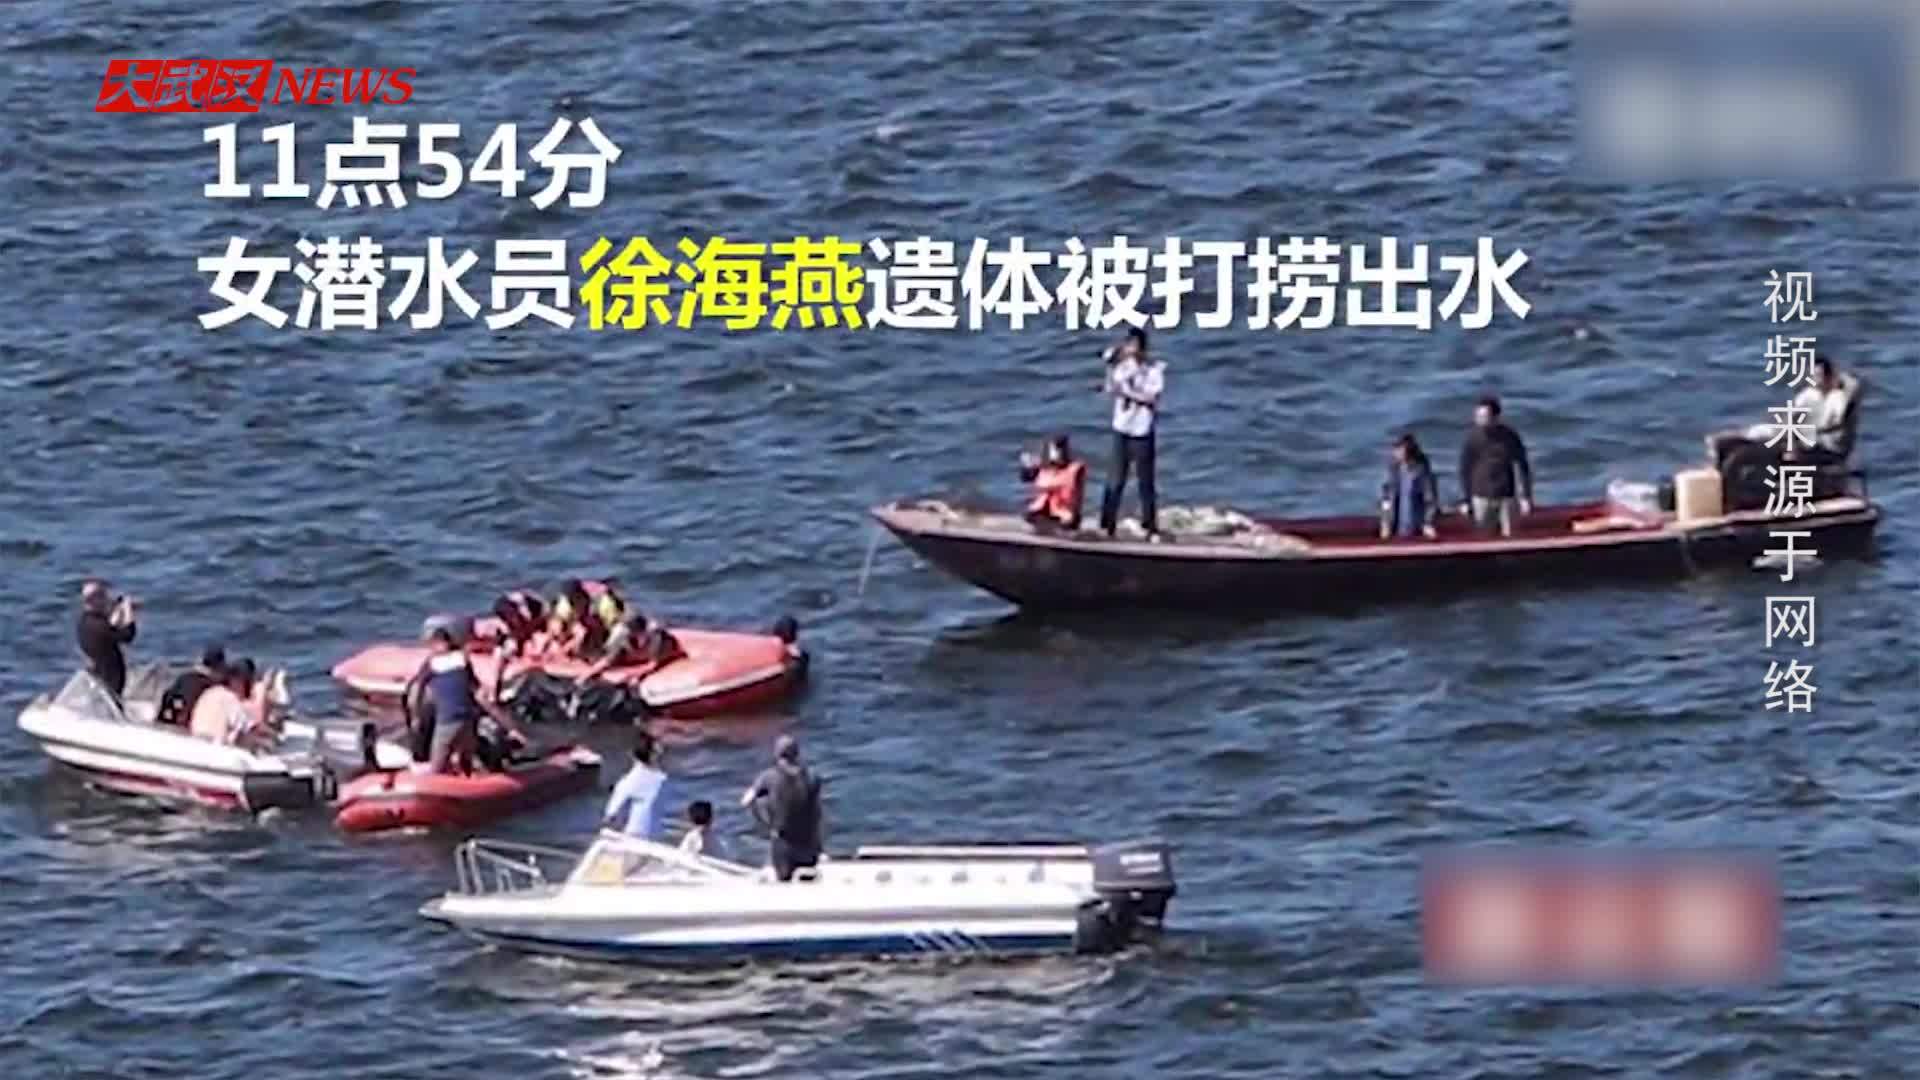 水库潜水员失踪事件:女潜水员已被打捞上岸!-360视频